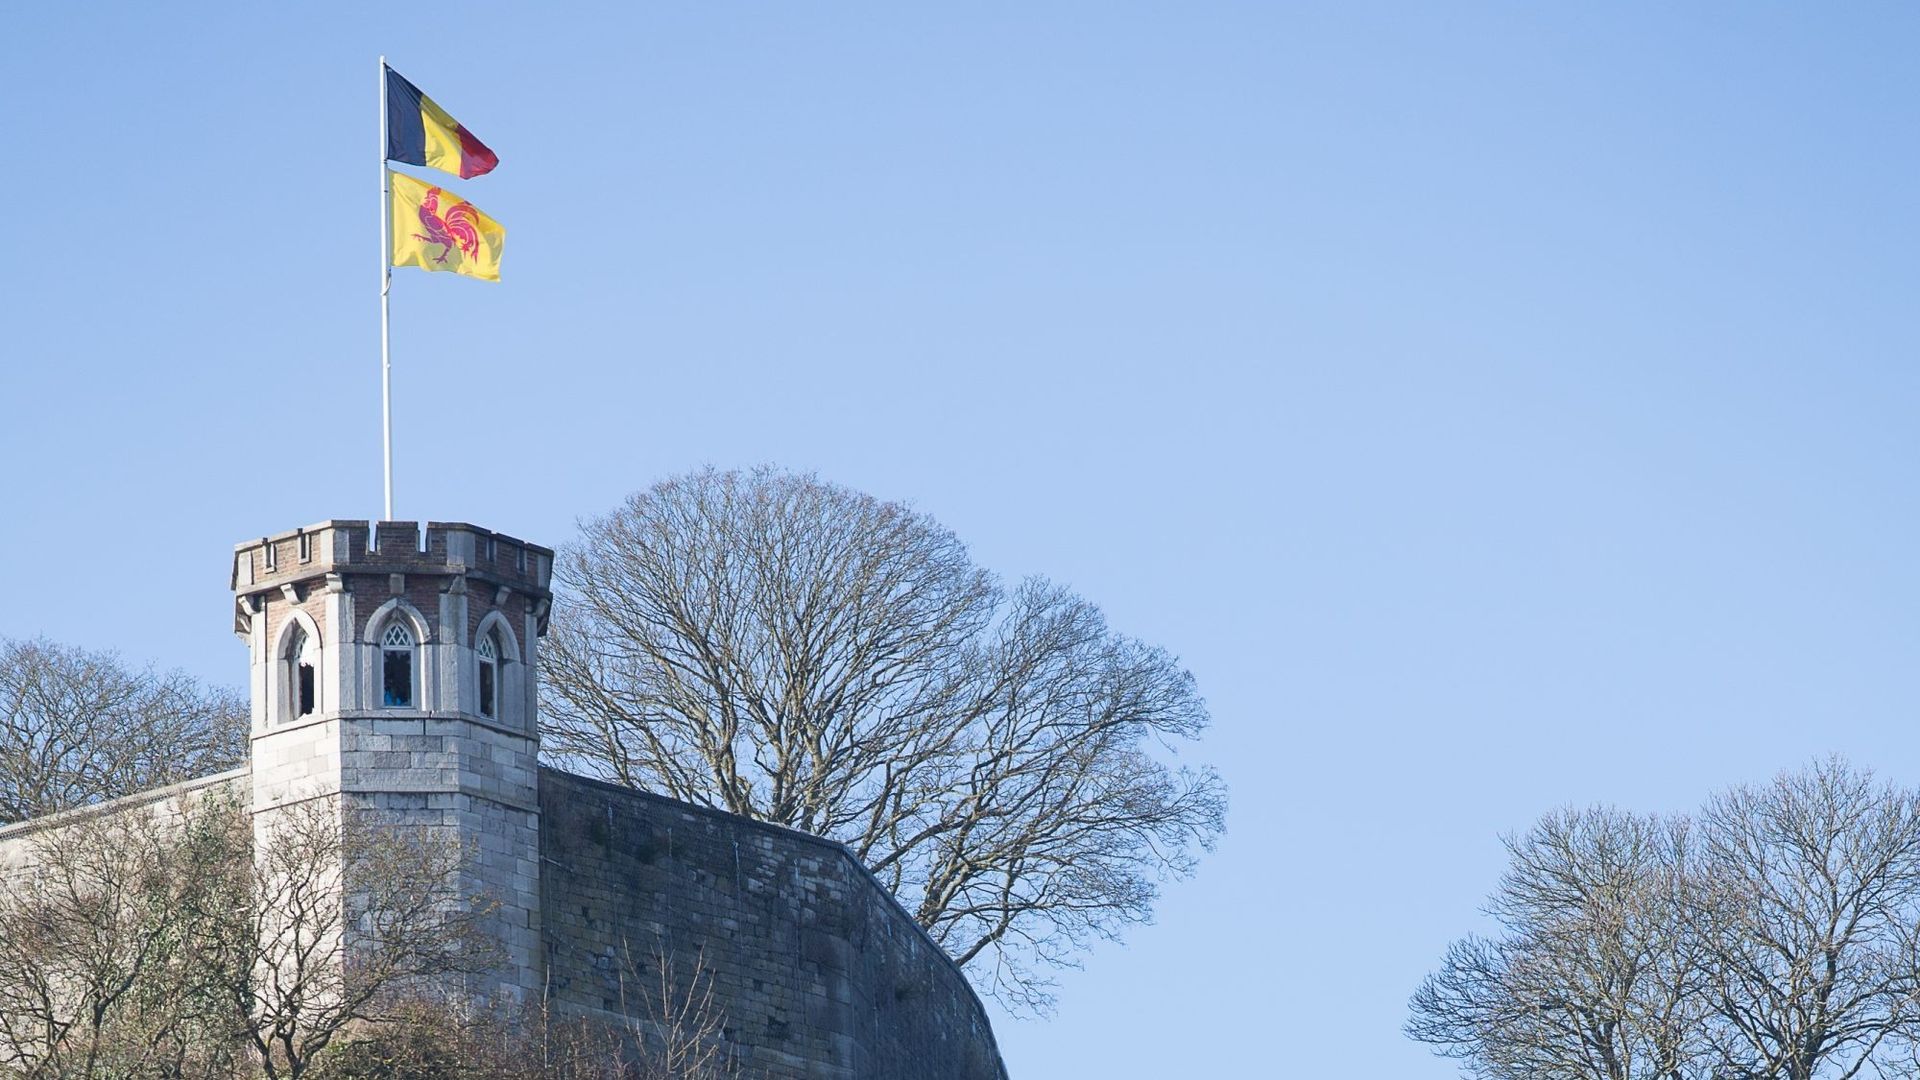 Le Bastion de Sambre de la Citadelle de Namur en rénovation jusqu'à début 2015